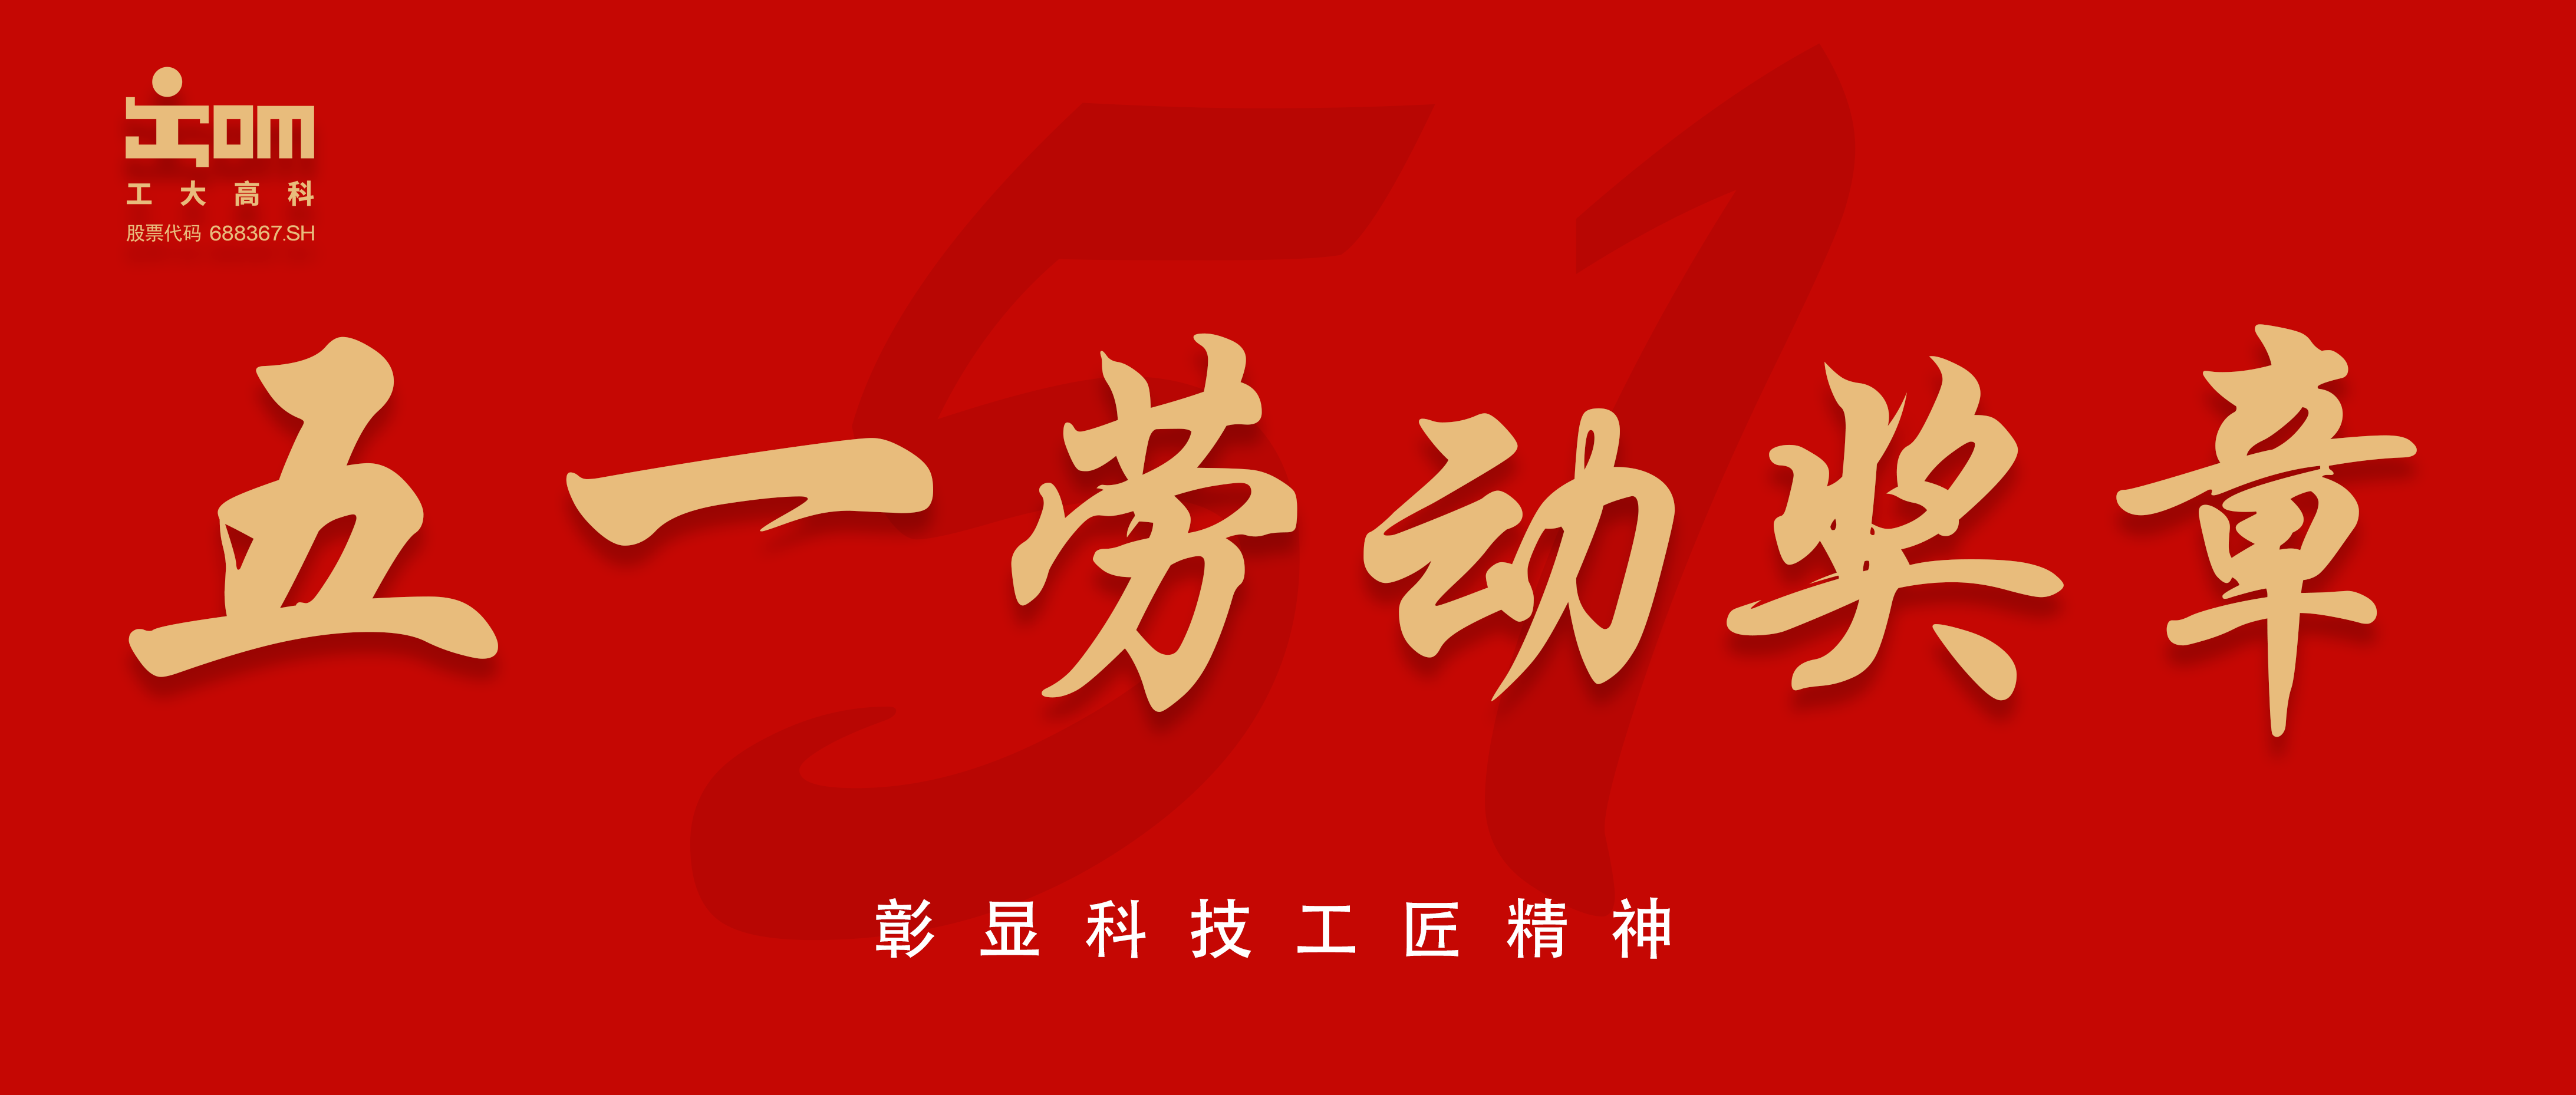 喜报 | 工大亚洲博彩app（688367.SH）杨伟荣获2024年安徽省五一劳动奖章